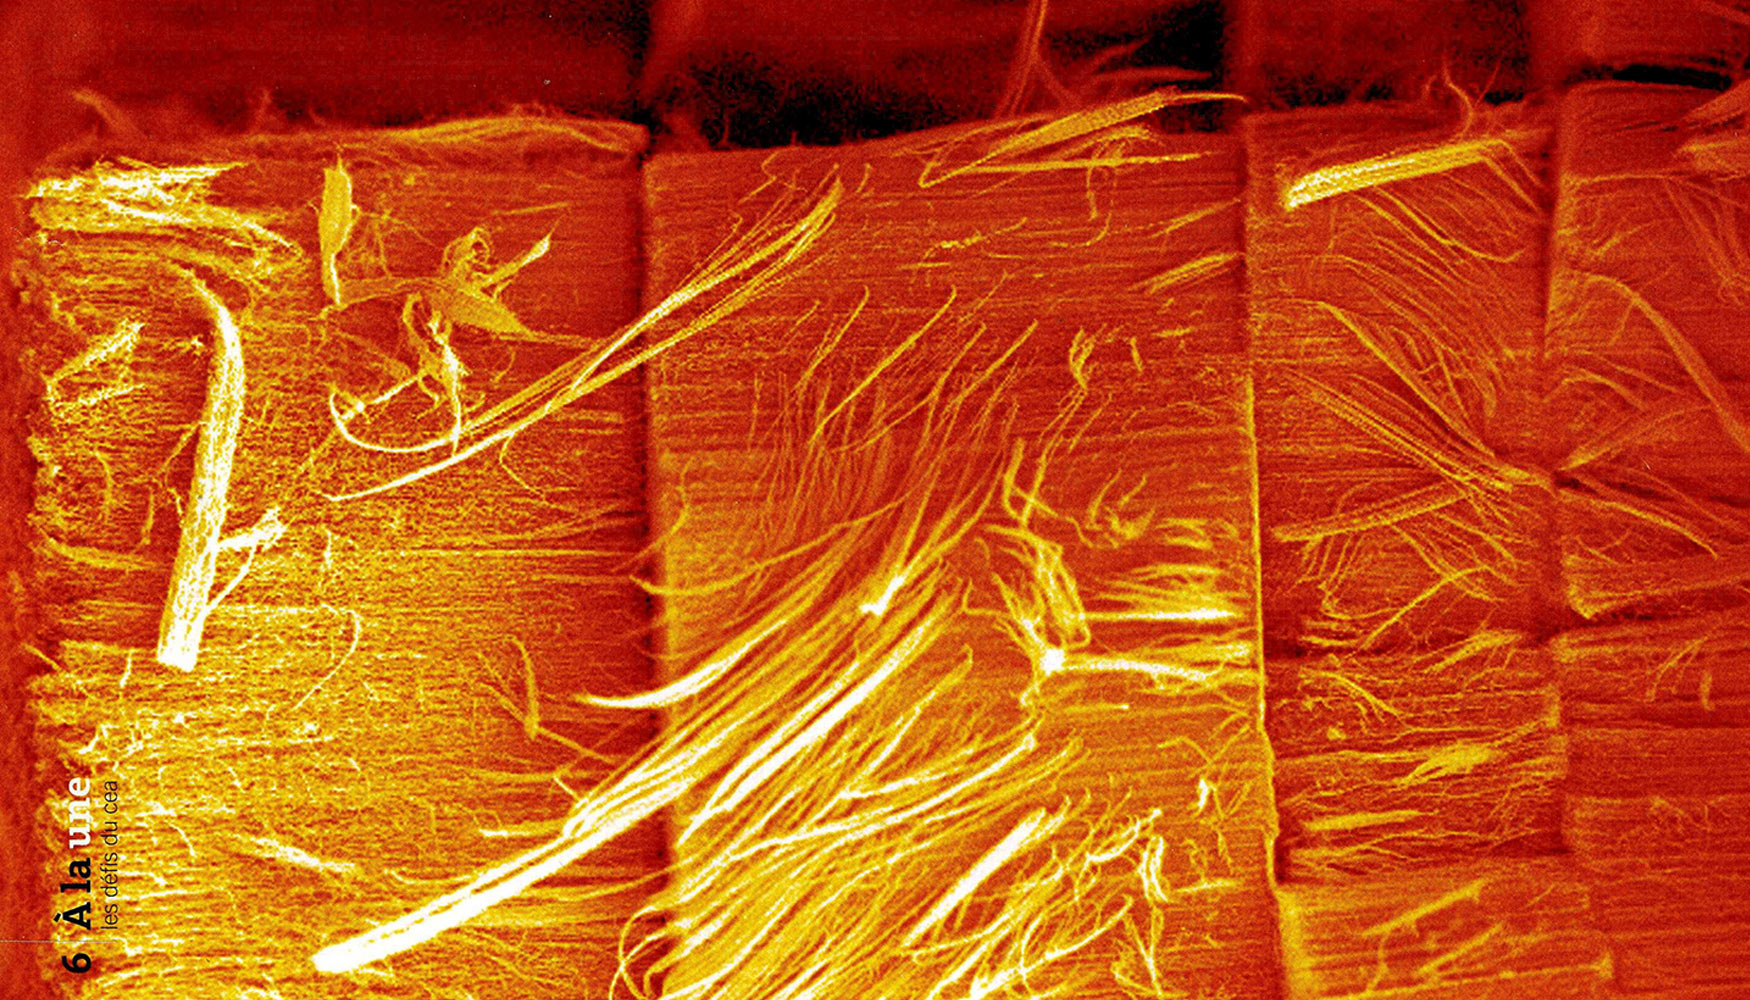 Los nanotubos de carbono dan porosidad a la nanopartcula creciendo desde abajo formando capas